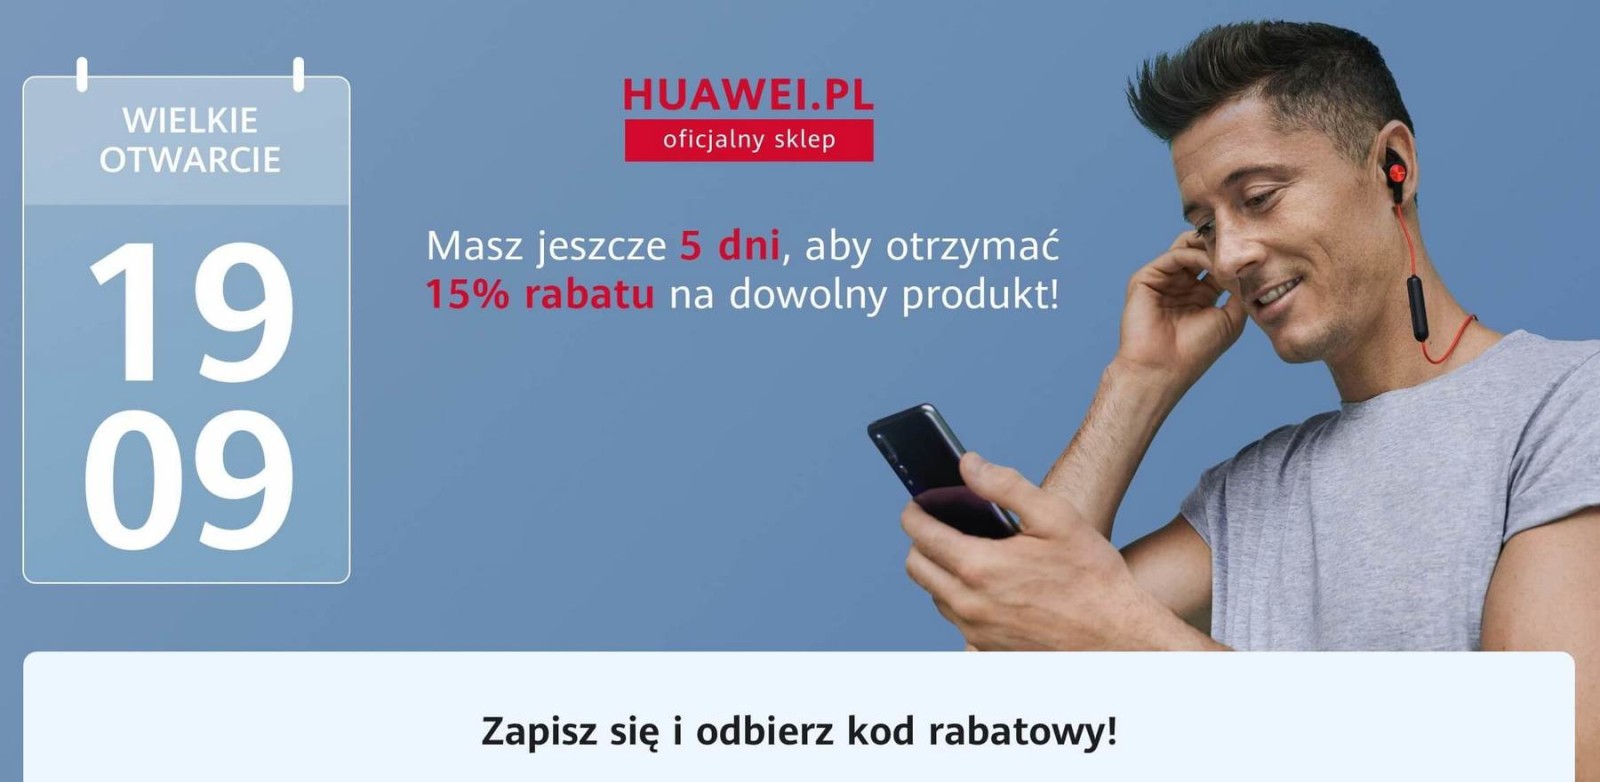 Інтернет-магазин huawei.pl відкриють 19.09.2019